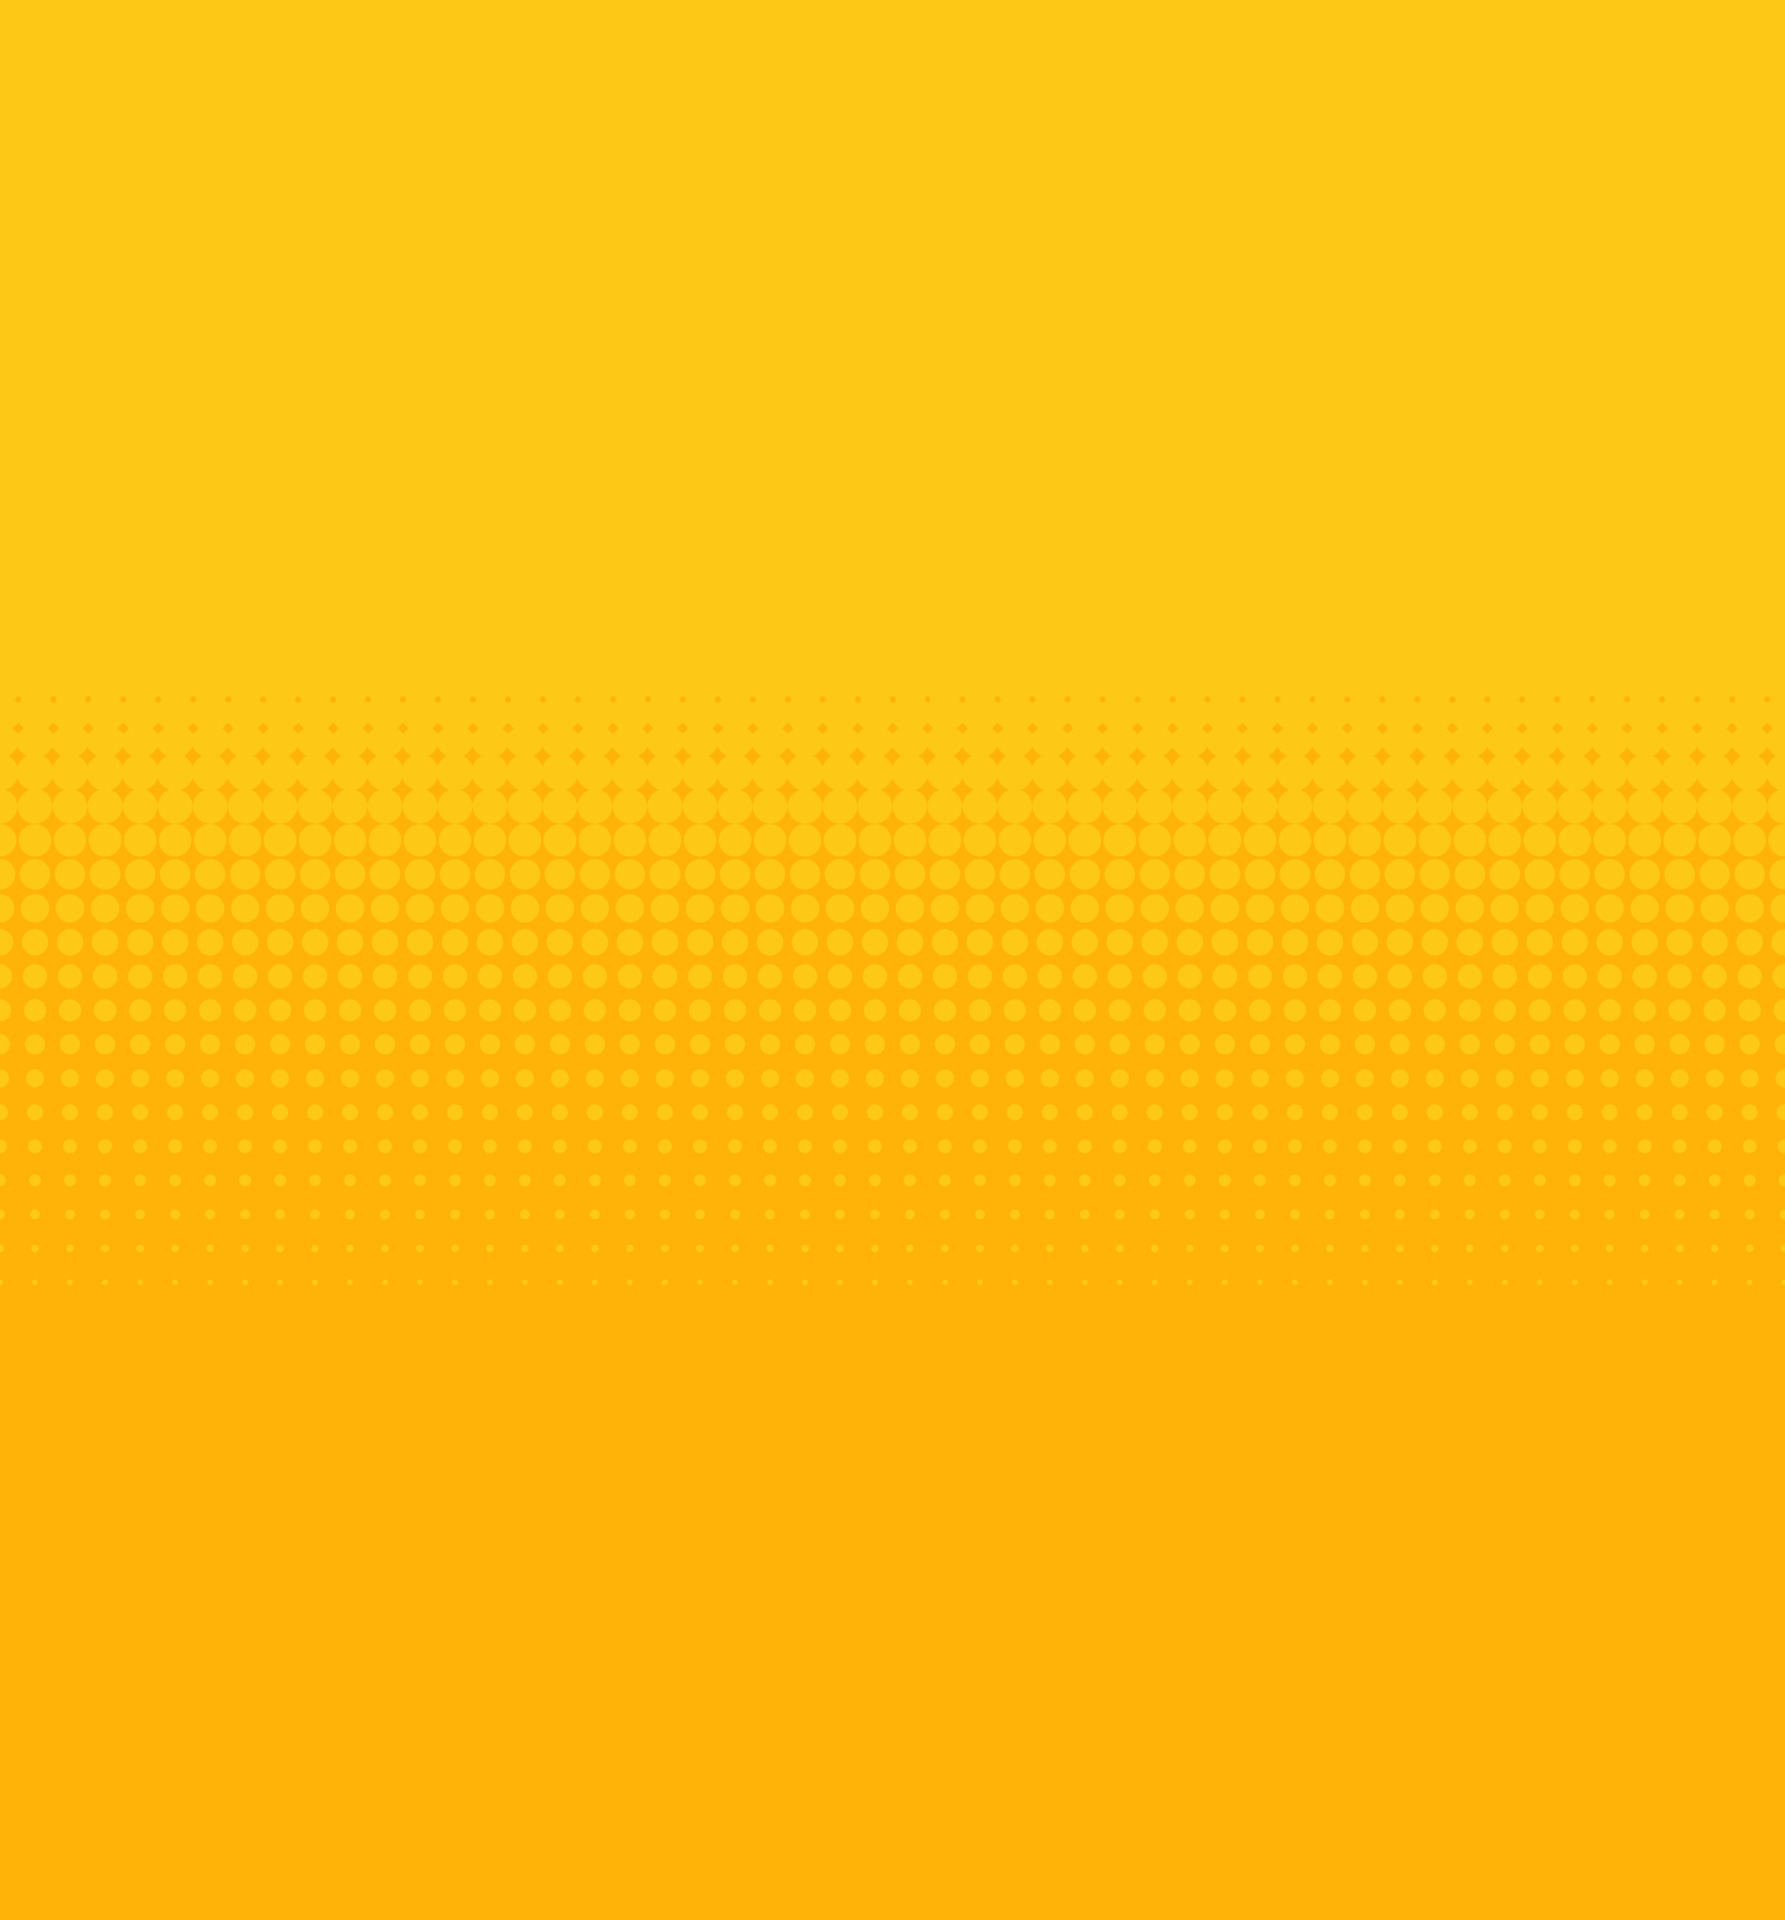 Nền trừu tượng với hiệu ứng gradient và màu vàng là một sự kết hợp tuyệt vời. Hãy thưởng thức hình ảnh này để tận hưởng sự độc đáo và sang trọng của kiểu trừu tượng này.